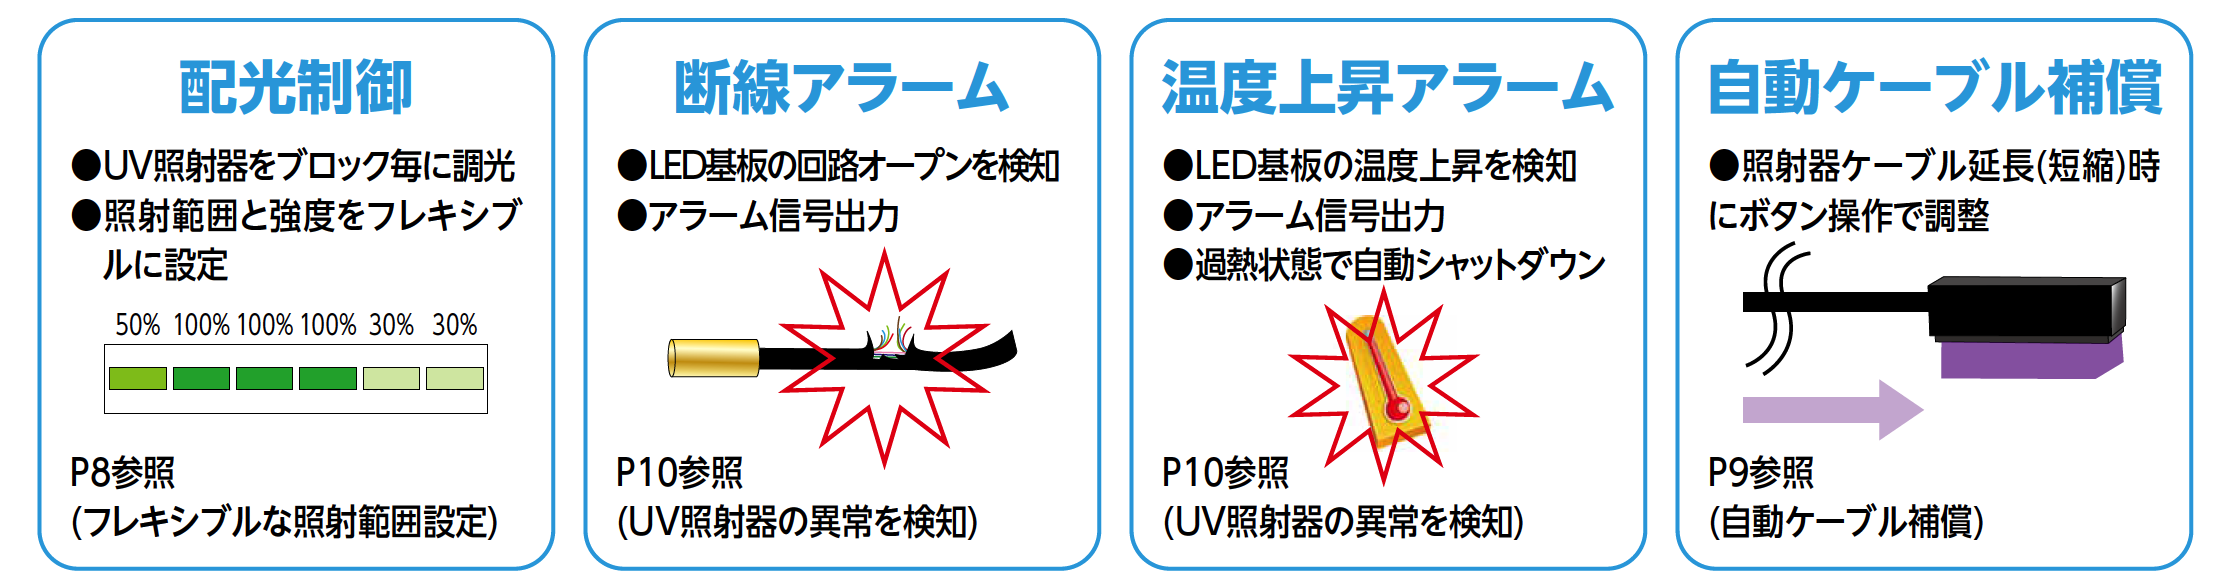 配光制御 UV照射器をブロック毎に調光 照射範囲と強度をフレキシブルに設定 P8参照 (フレキシブルな照射範囲設定) 断線アラーム LED基板の回路オープンを検知
 アラーム信号出力 P10参照(UV照射器の異常を検知) 温度上昇アラーム LED基板の温度上昇を検知 アラーム信号出力 過熱状態で自動シャットダウン P10参照(UV照射器の異常を検知) 自動ケーブル補償 照射器ケーブル延長(短縮)時にボタン操作で調整 P9参照(自動ケーブル補償)